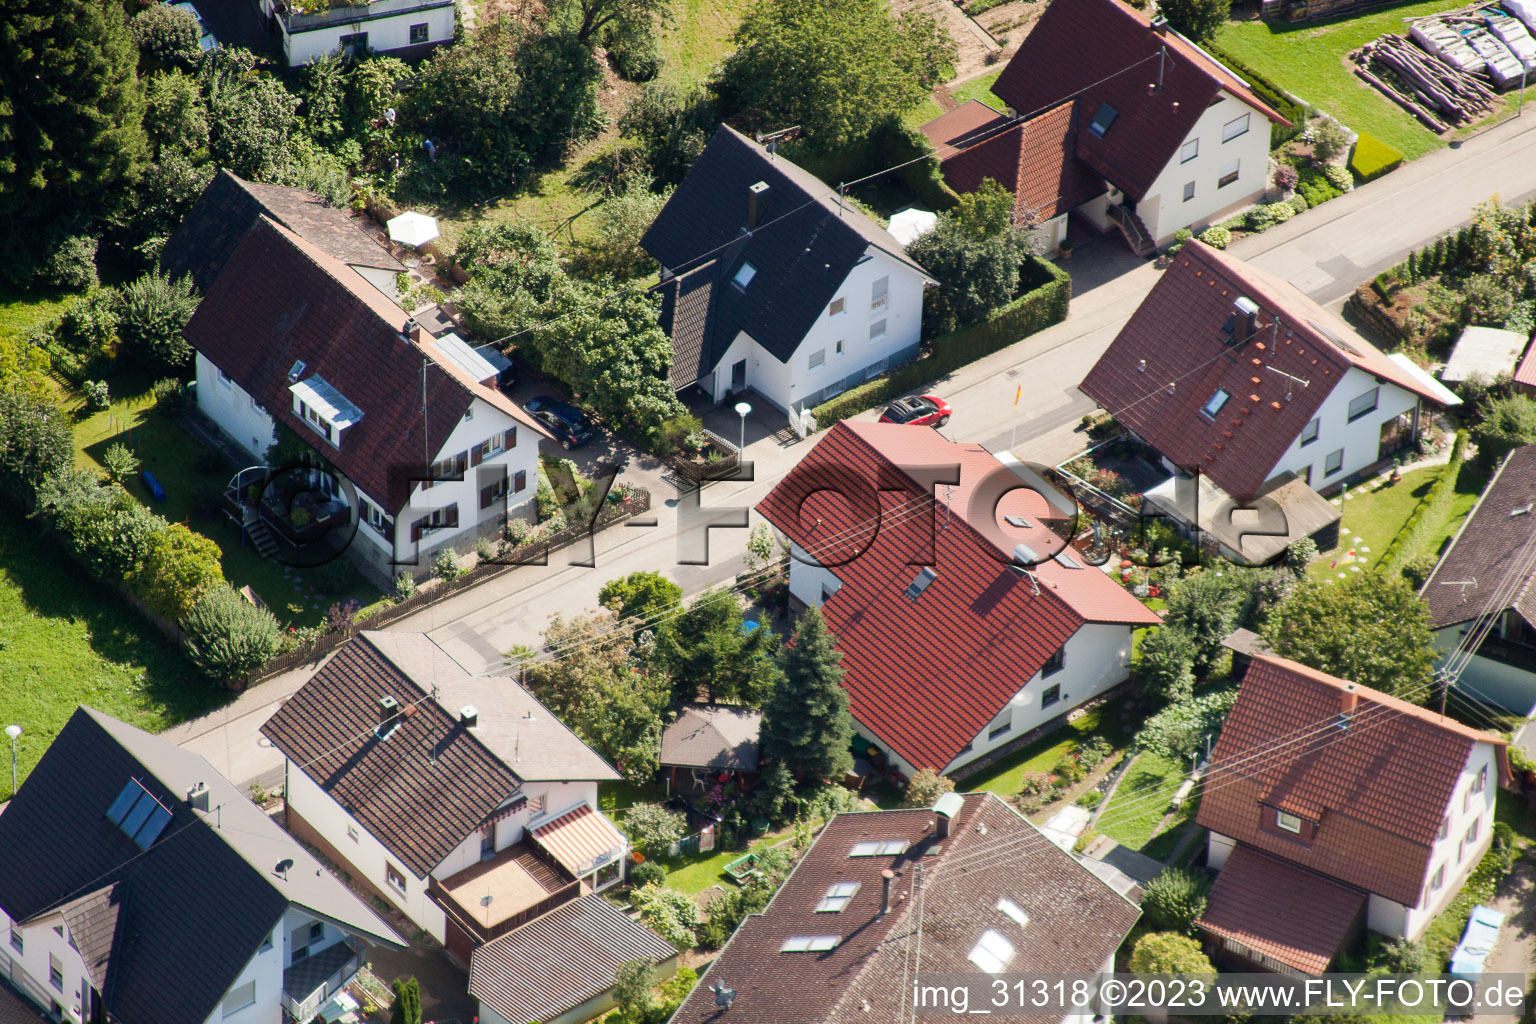 Varnhalt, Gartenstr im Ortsteil Gallenbach in Baden-Baden im Bundesland Baden-Württemberg, Deutschland aus der Drohnenperspektive